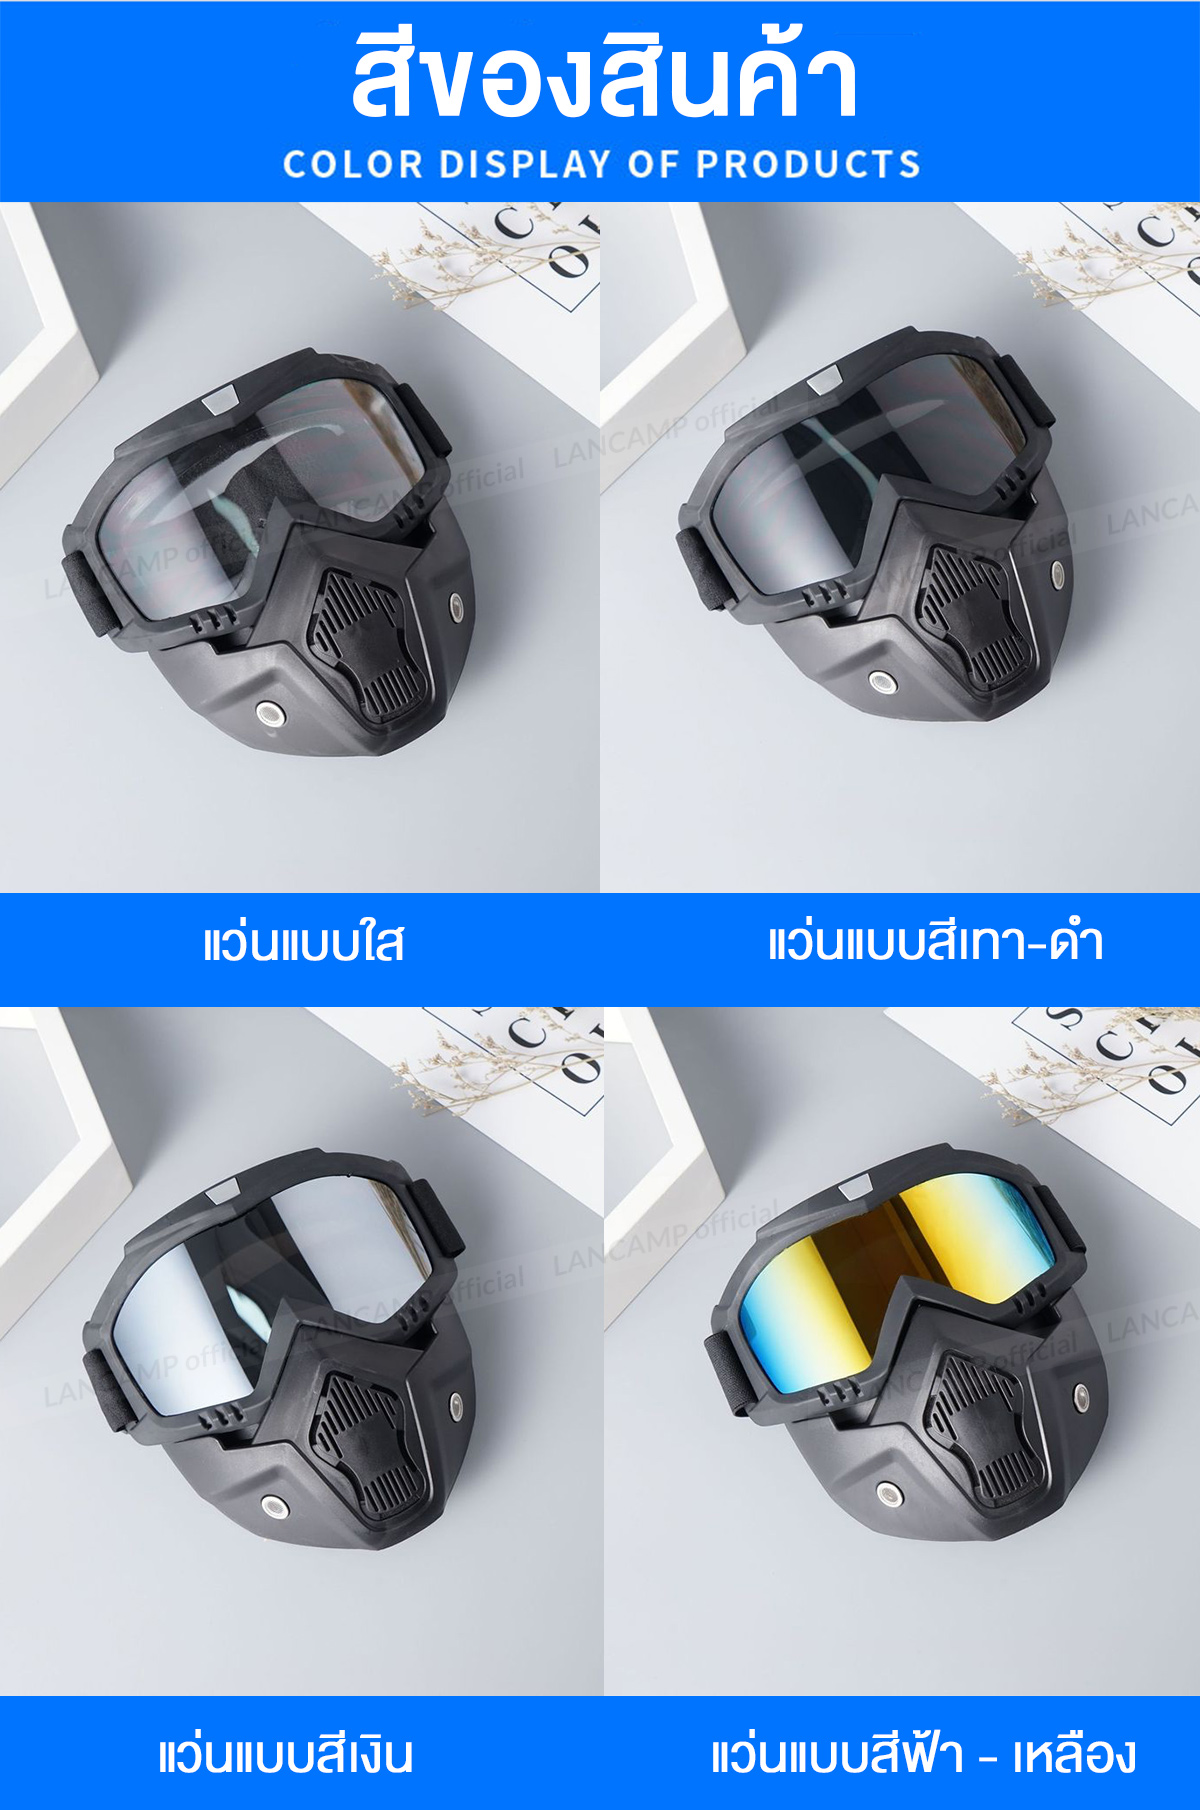 รูปภาพเพิ่มเติมเกี่ยวกับ Lancamp หน้ากากหมวกกันน็อค หน้ากากกันลม กันฝุ่น กันแดด กันกระแทก แว่น+หน้ากาก แว่นวิบาก สามารถปรับสายรัดได้ เหมาะกับการใช้กลางแจ้ง